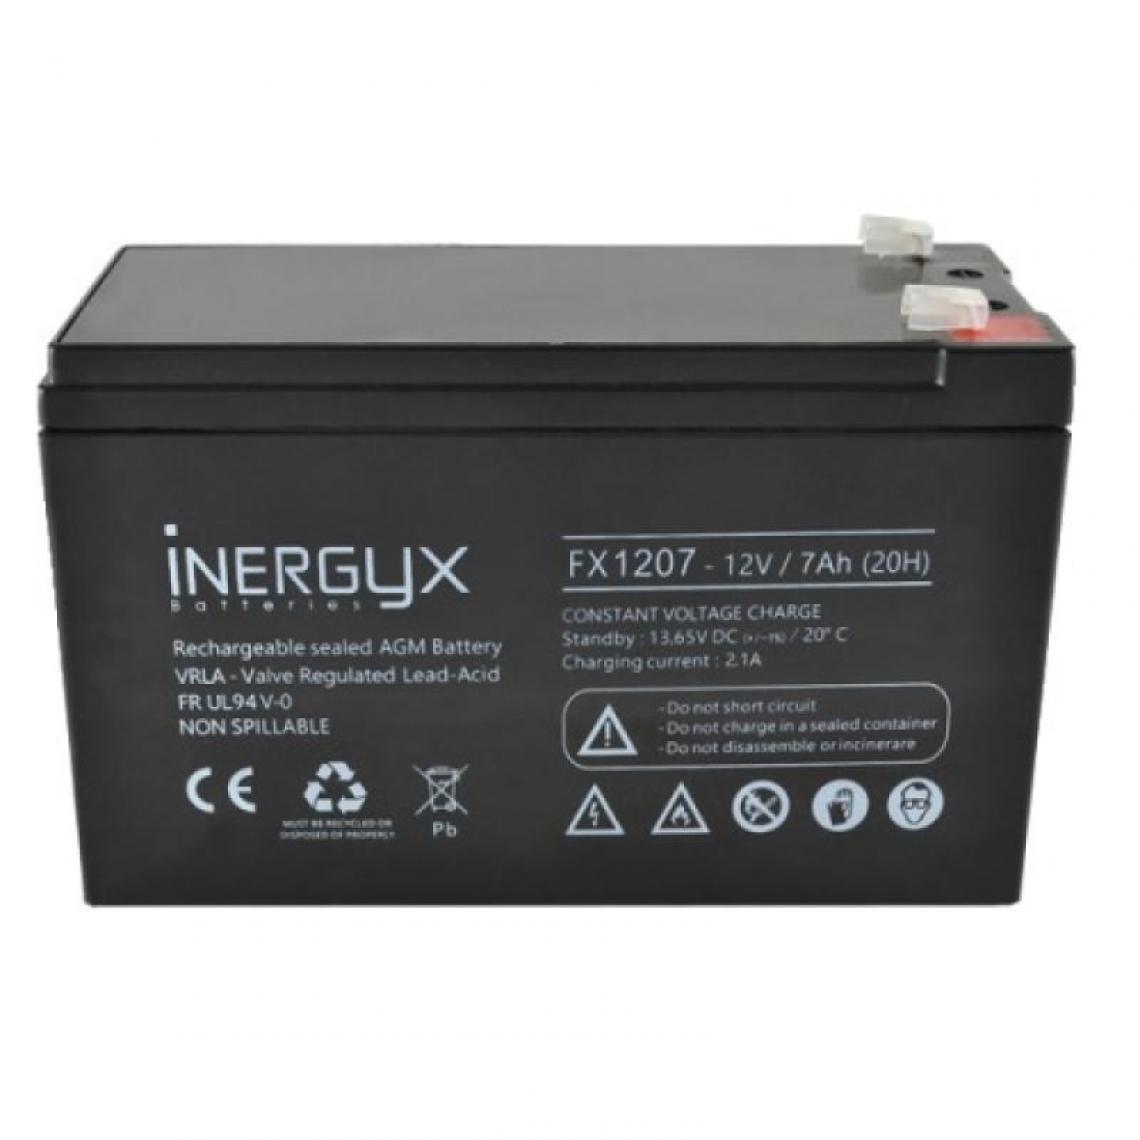 Izyx - Batterie rechargeable VRLA à boitier FR/UL94 V-O - 12 Volts 7 A/heure - compatible coffret alimentation ABS série RSX - Détecteur connecté